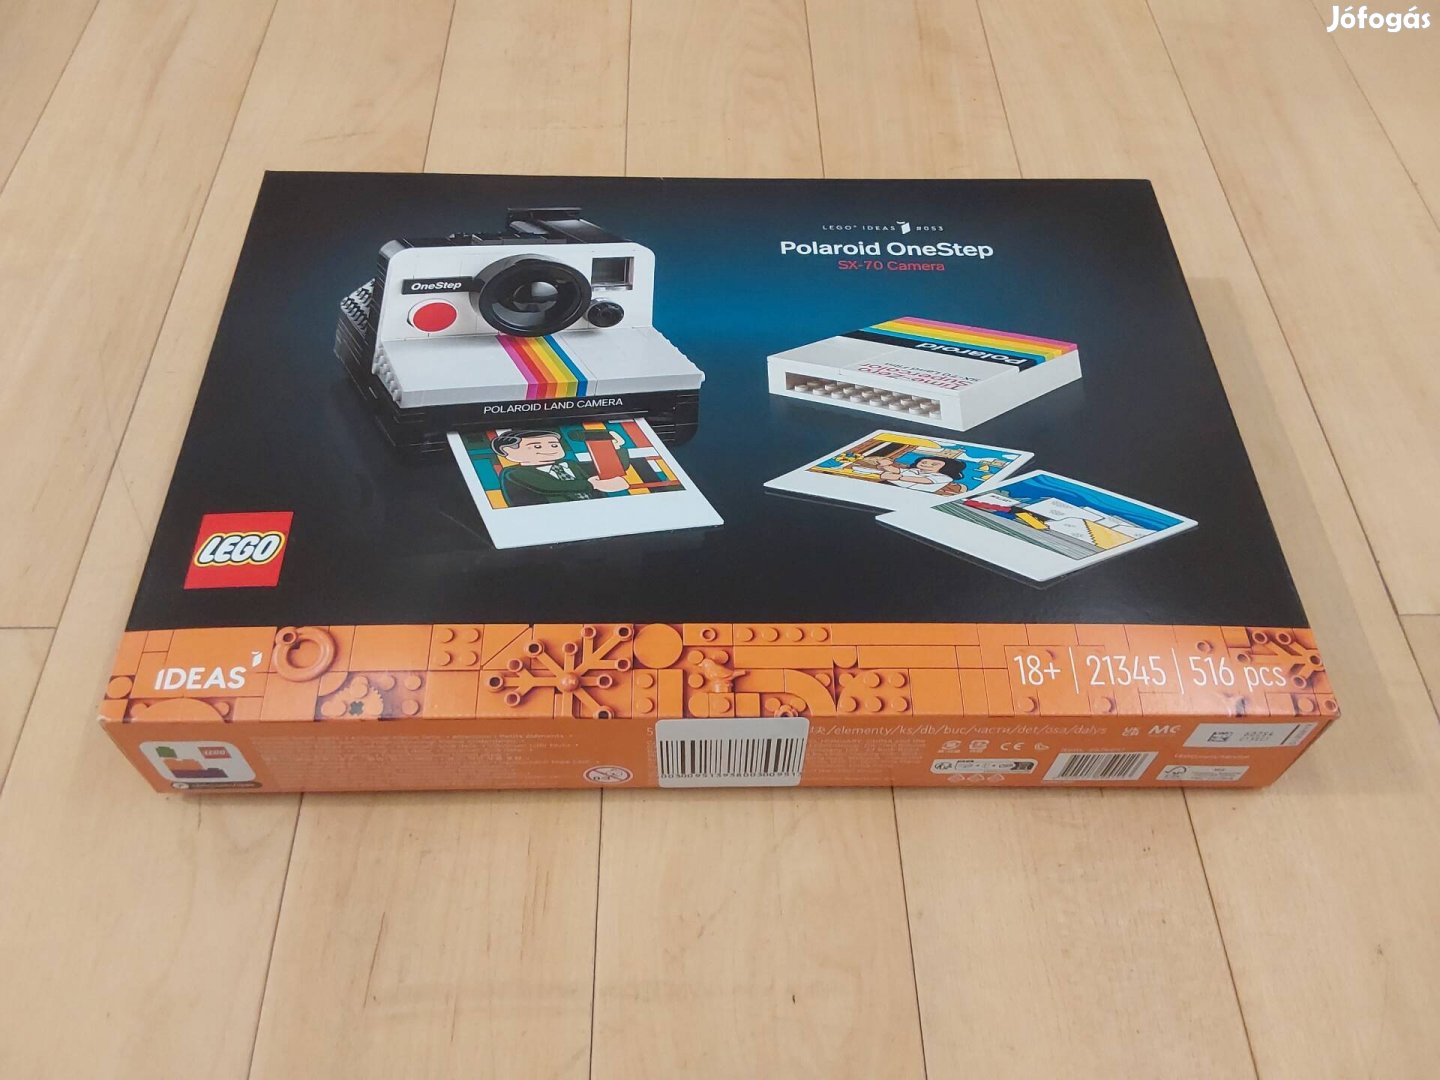 Lego 21345 Polaroid